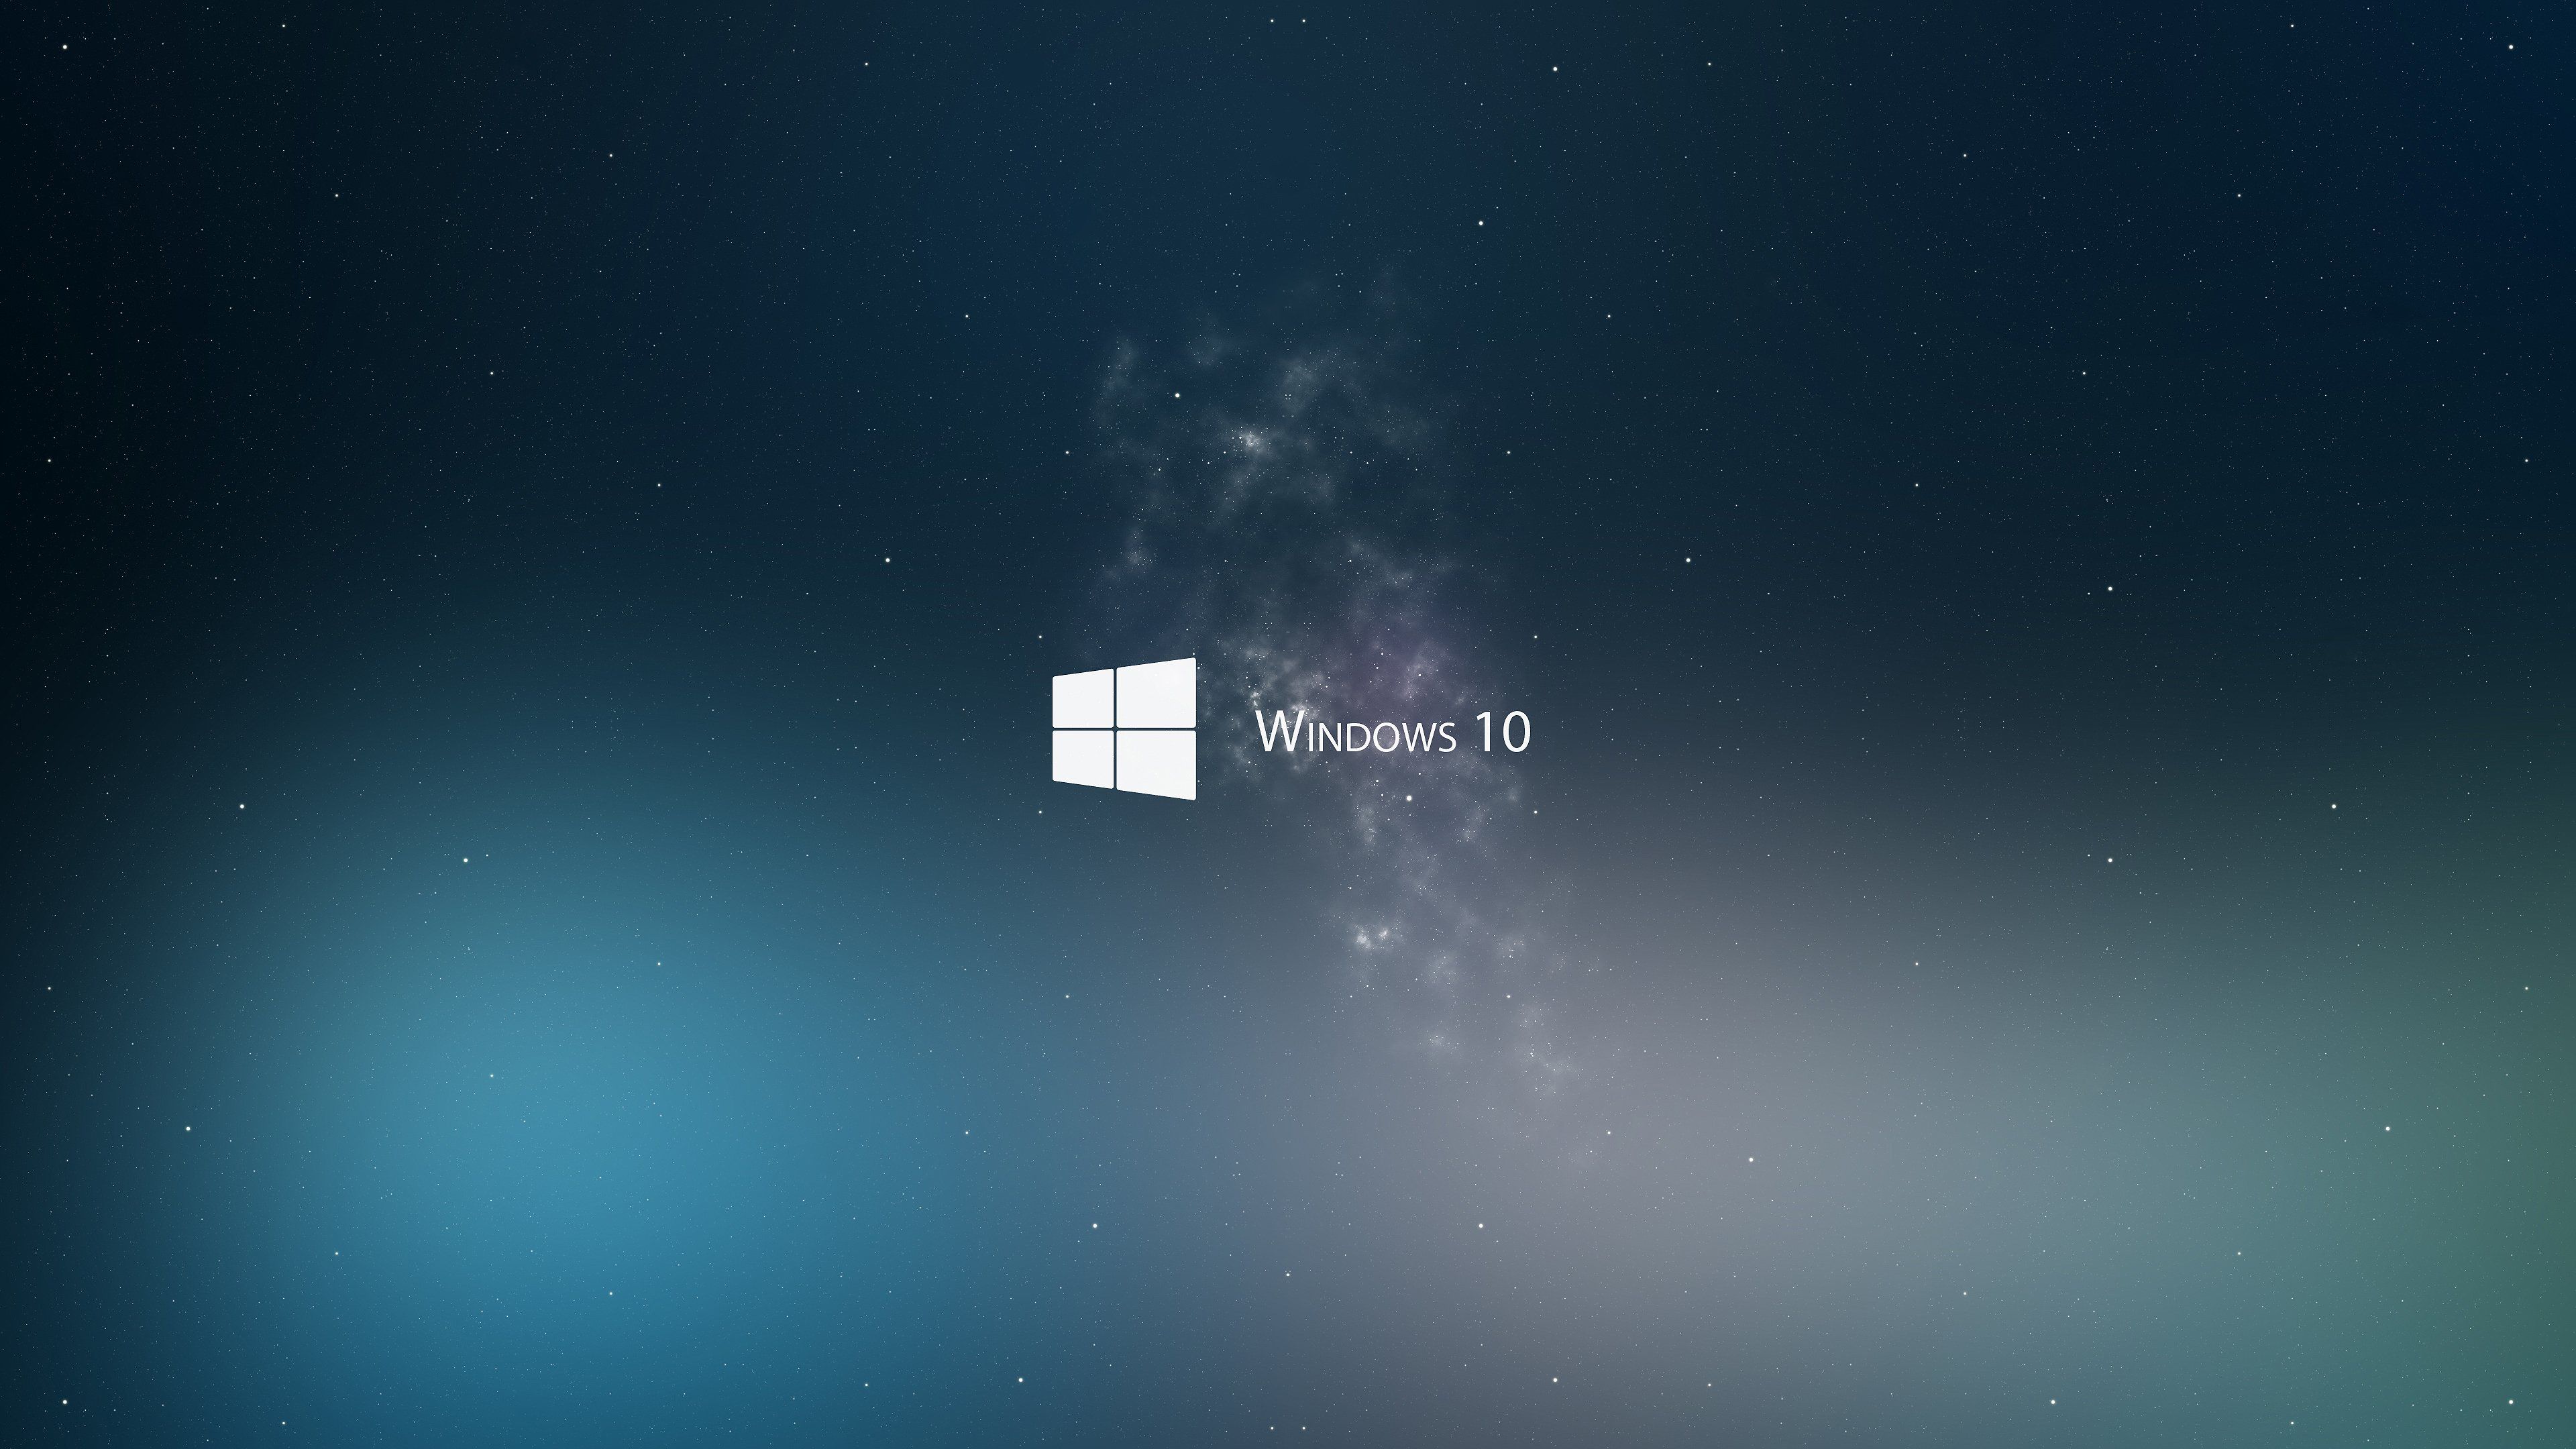 Windows 10 Wallpaper HD Deskk